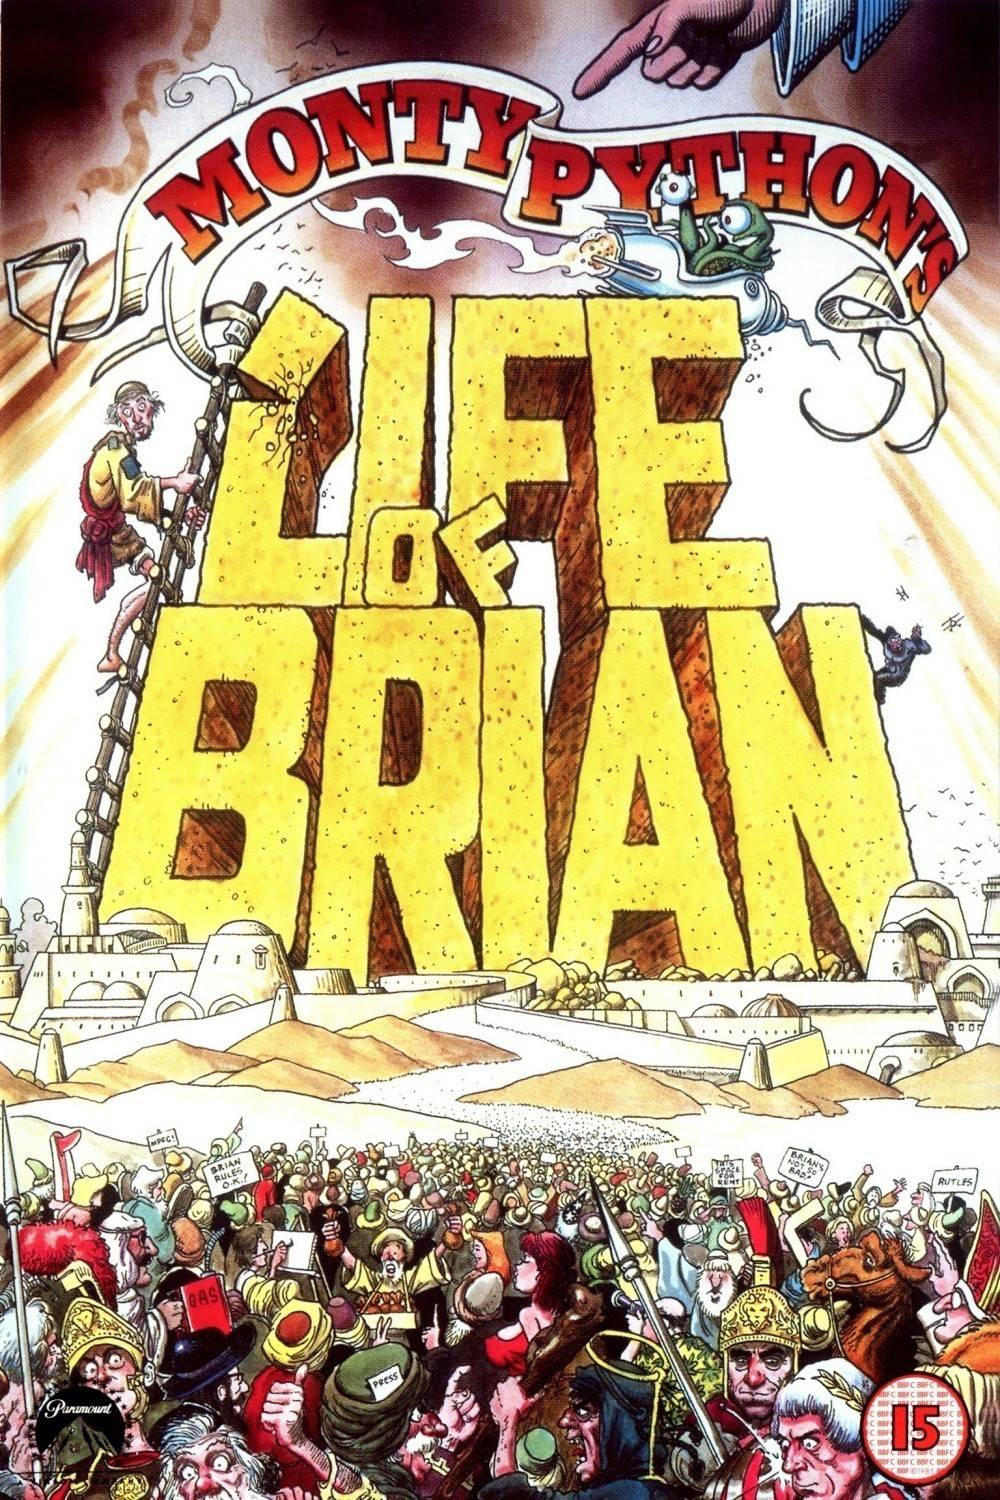 Life Of Brian Quotes. QuotesGram